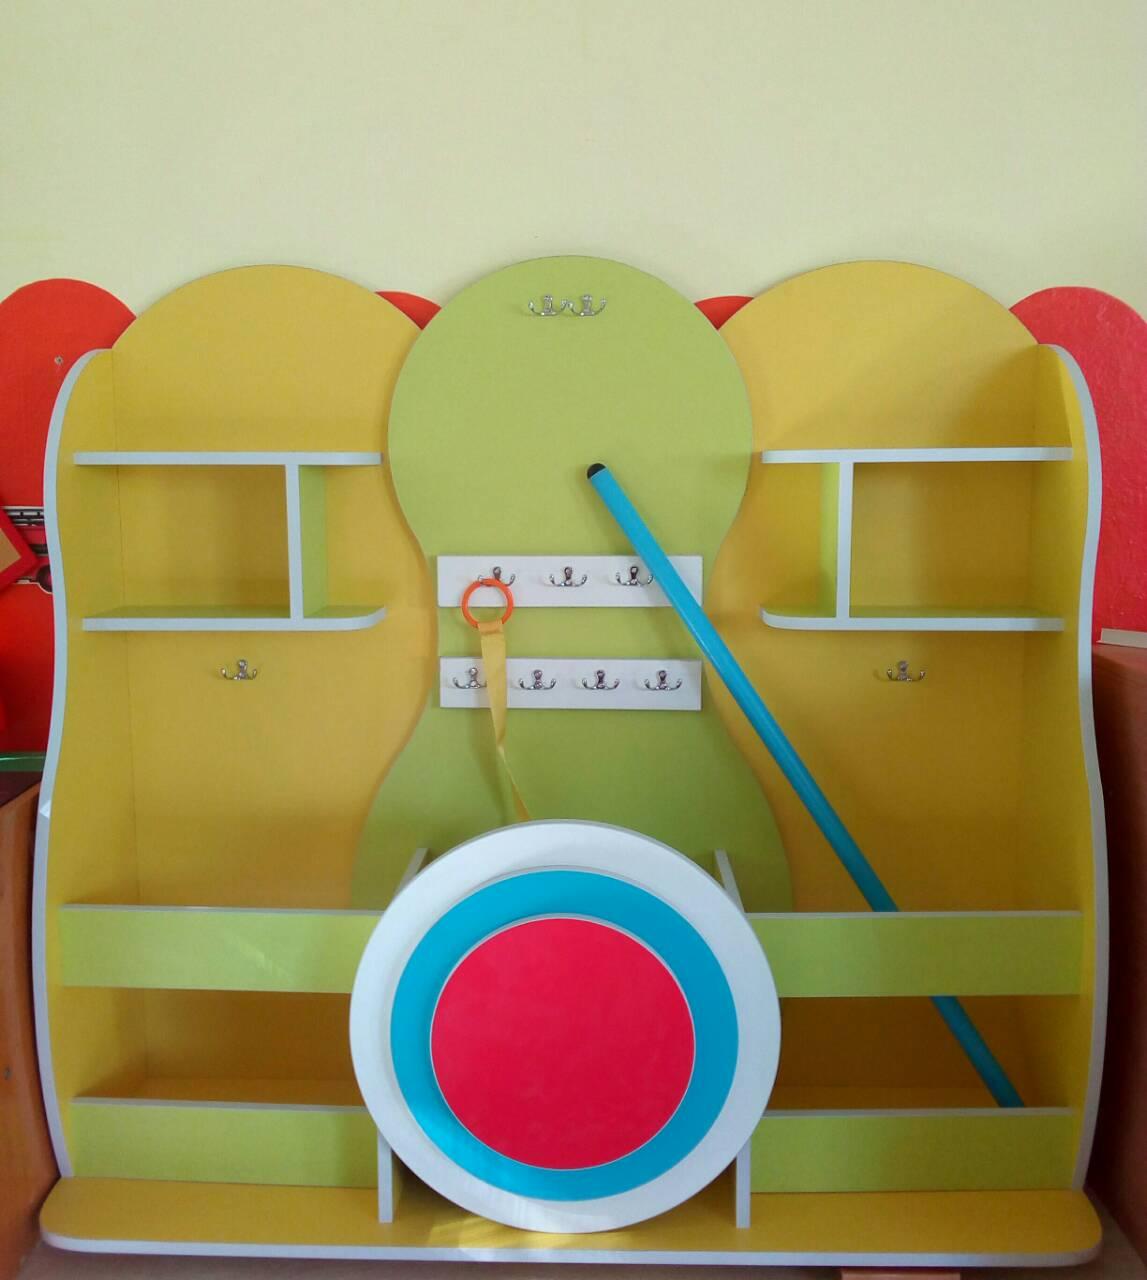 Стеллаж ДУ-ИМ-017 "Мишень" (детская мебель для спортинвентаря)